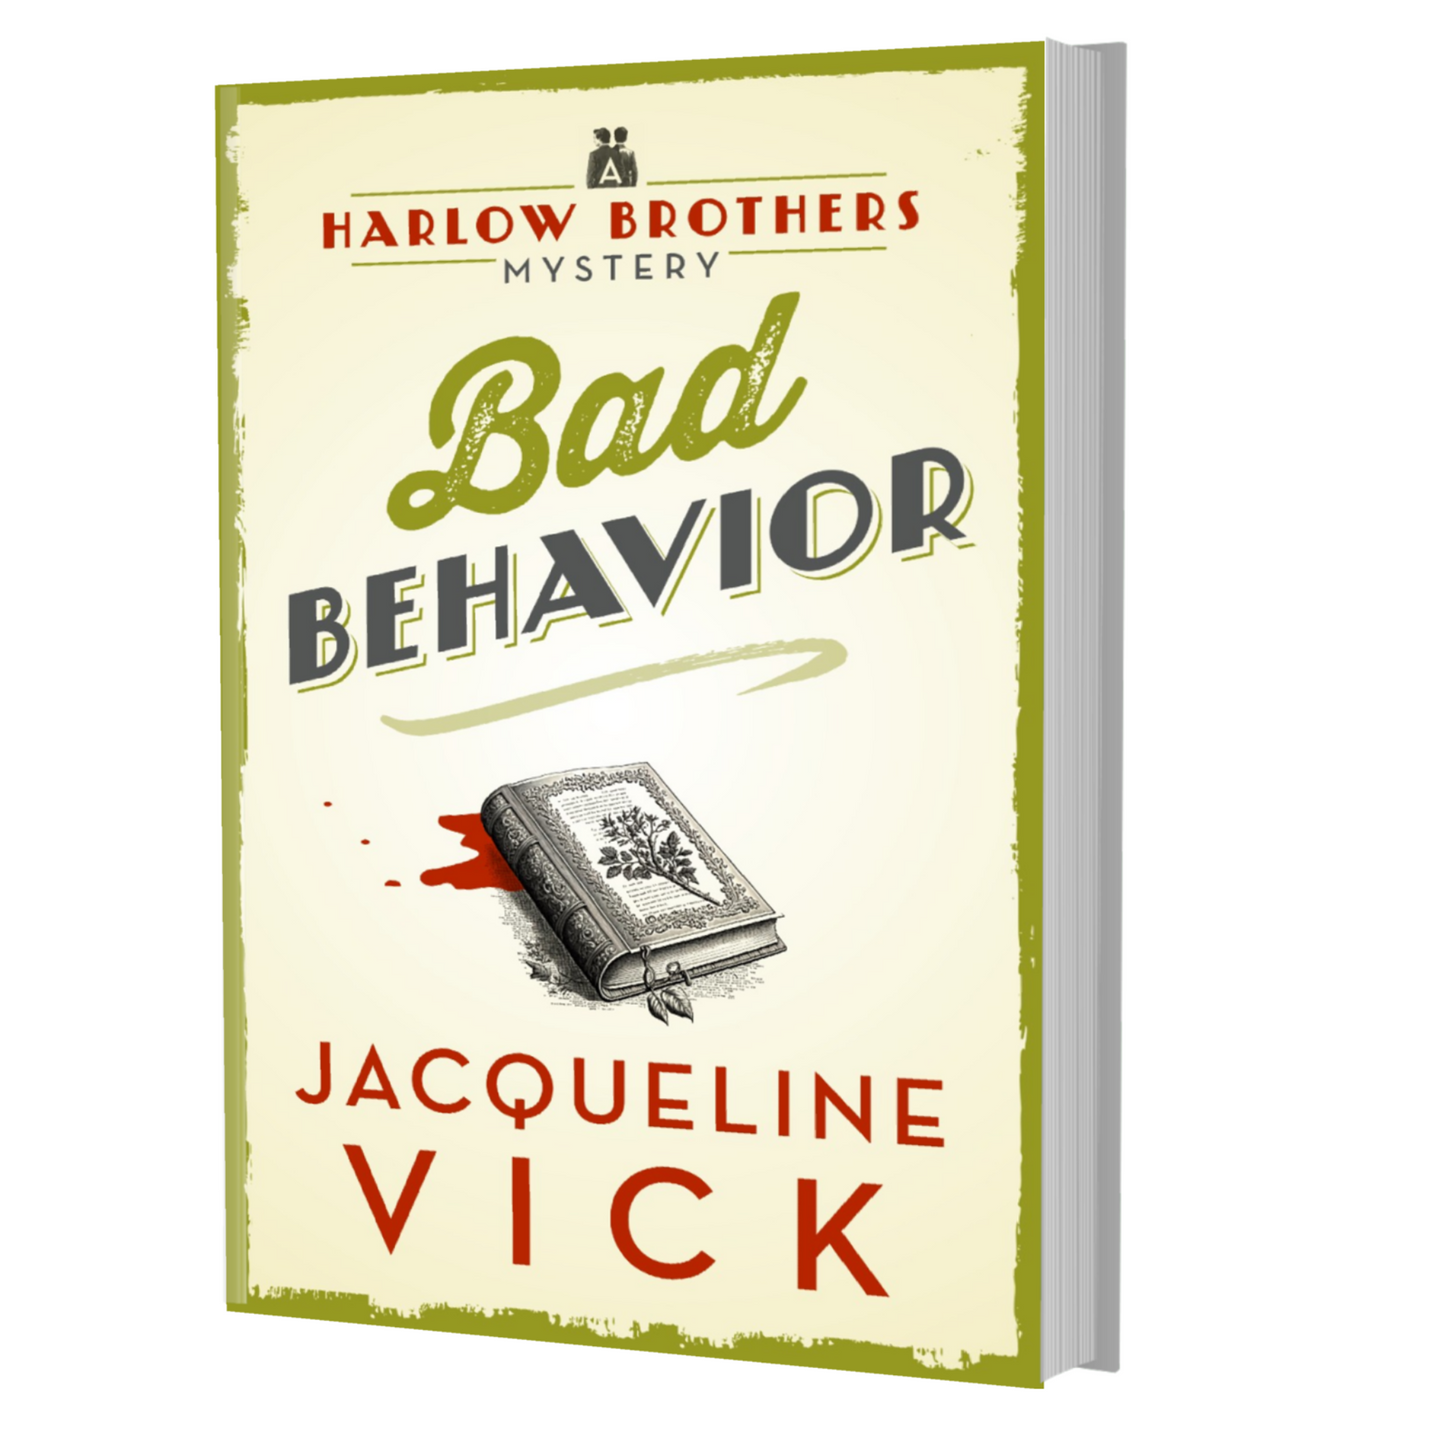 Bad Behavior (Paperback)